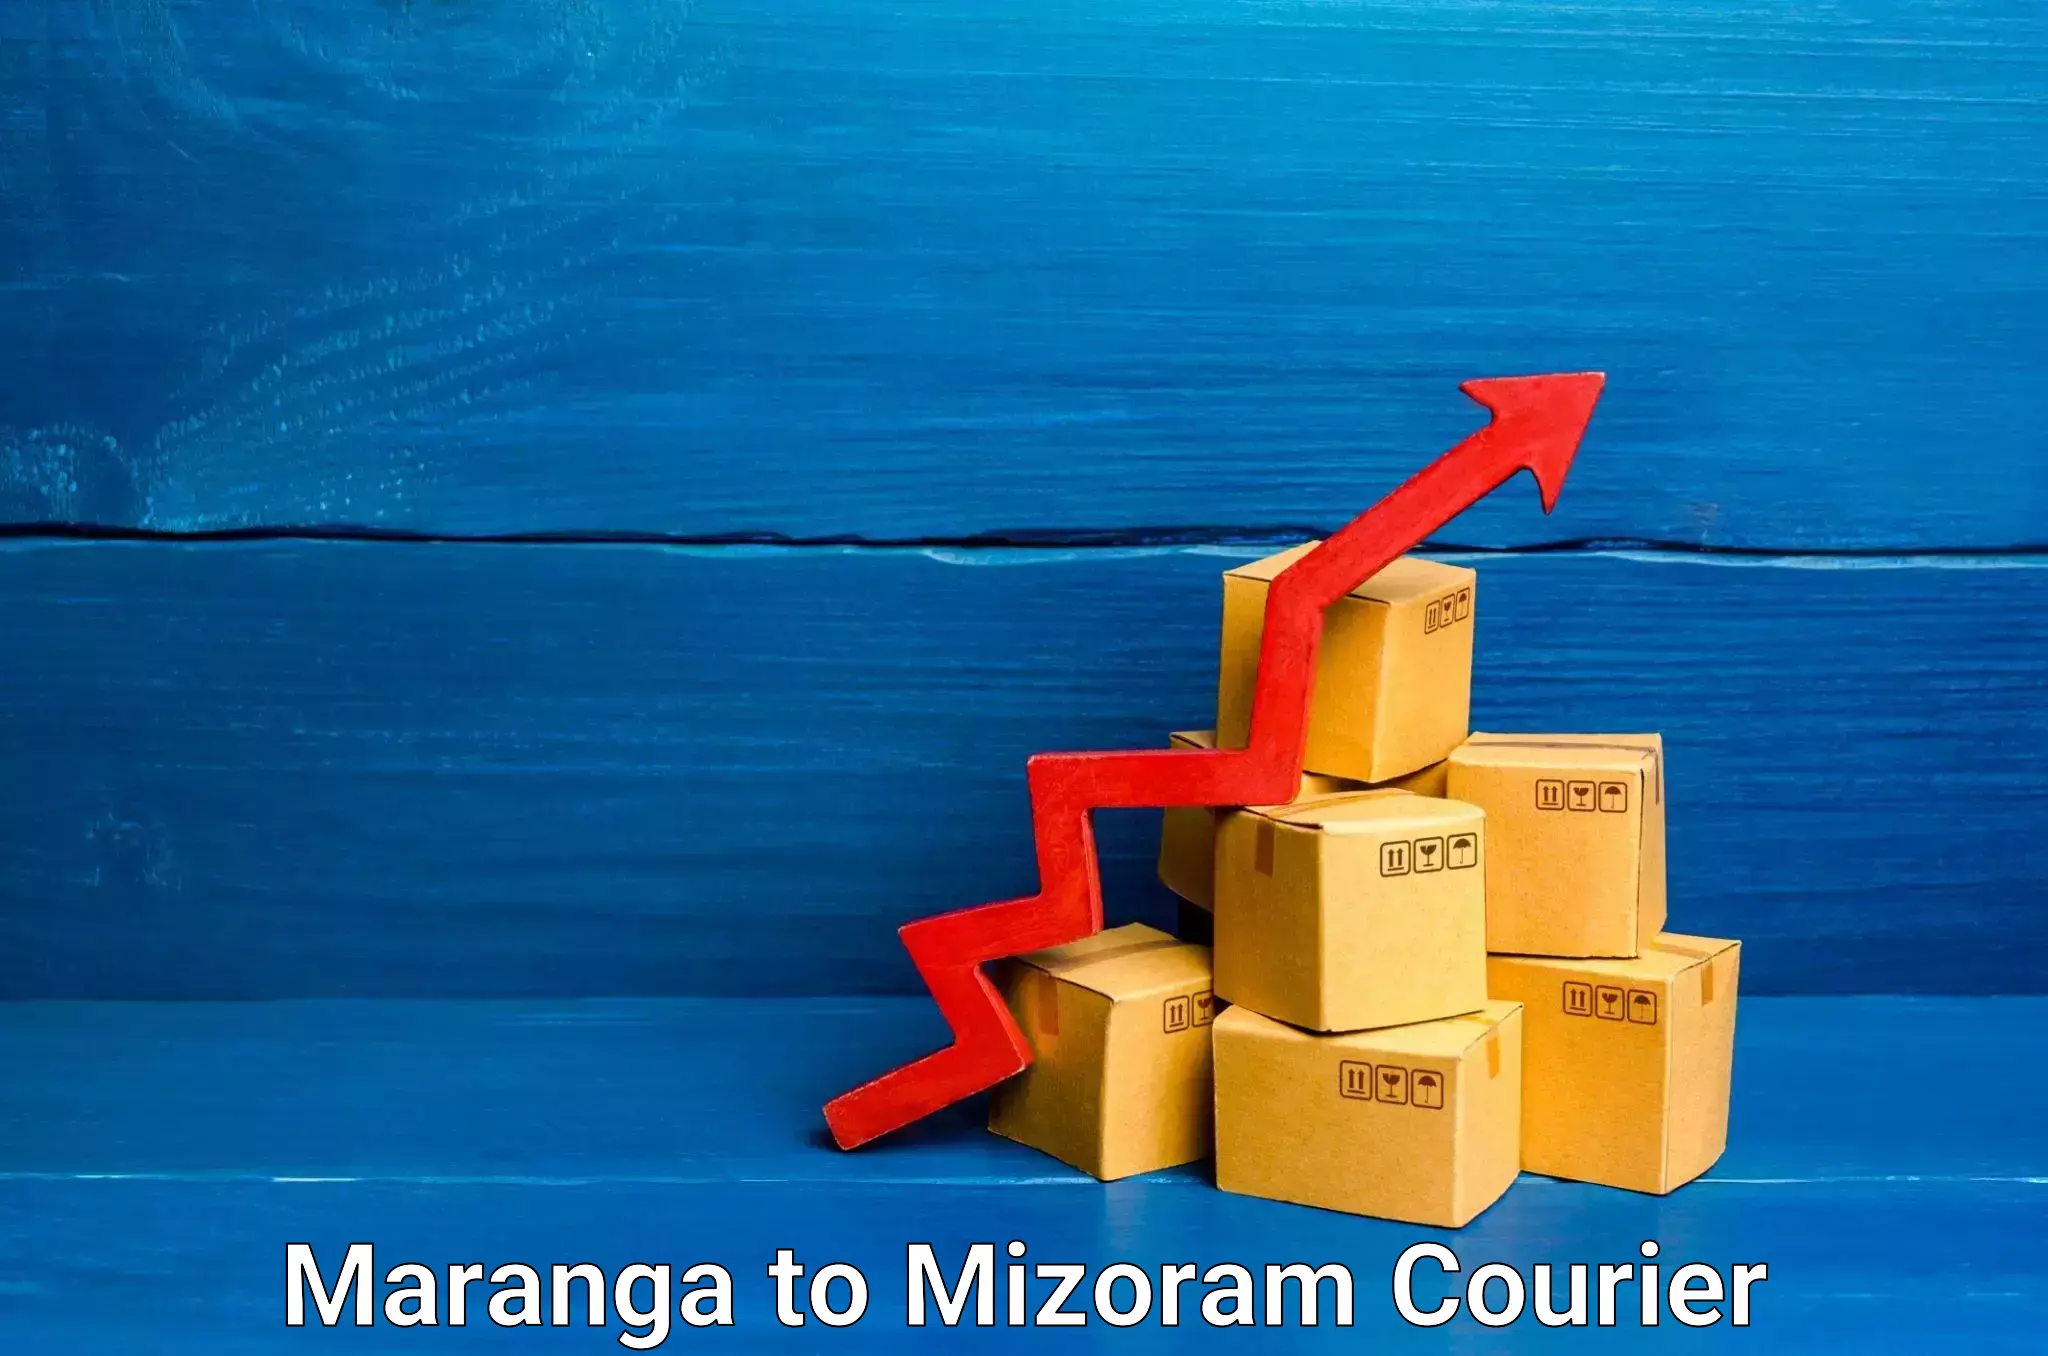 Home shifting experts Maranga to Mizoram